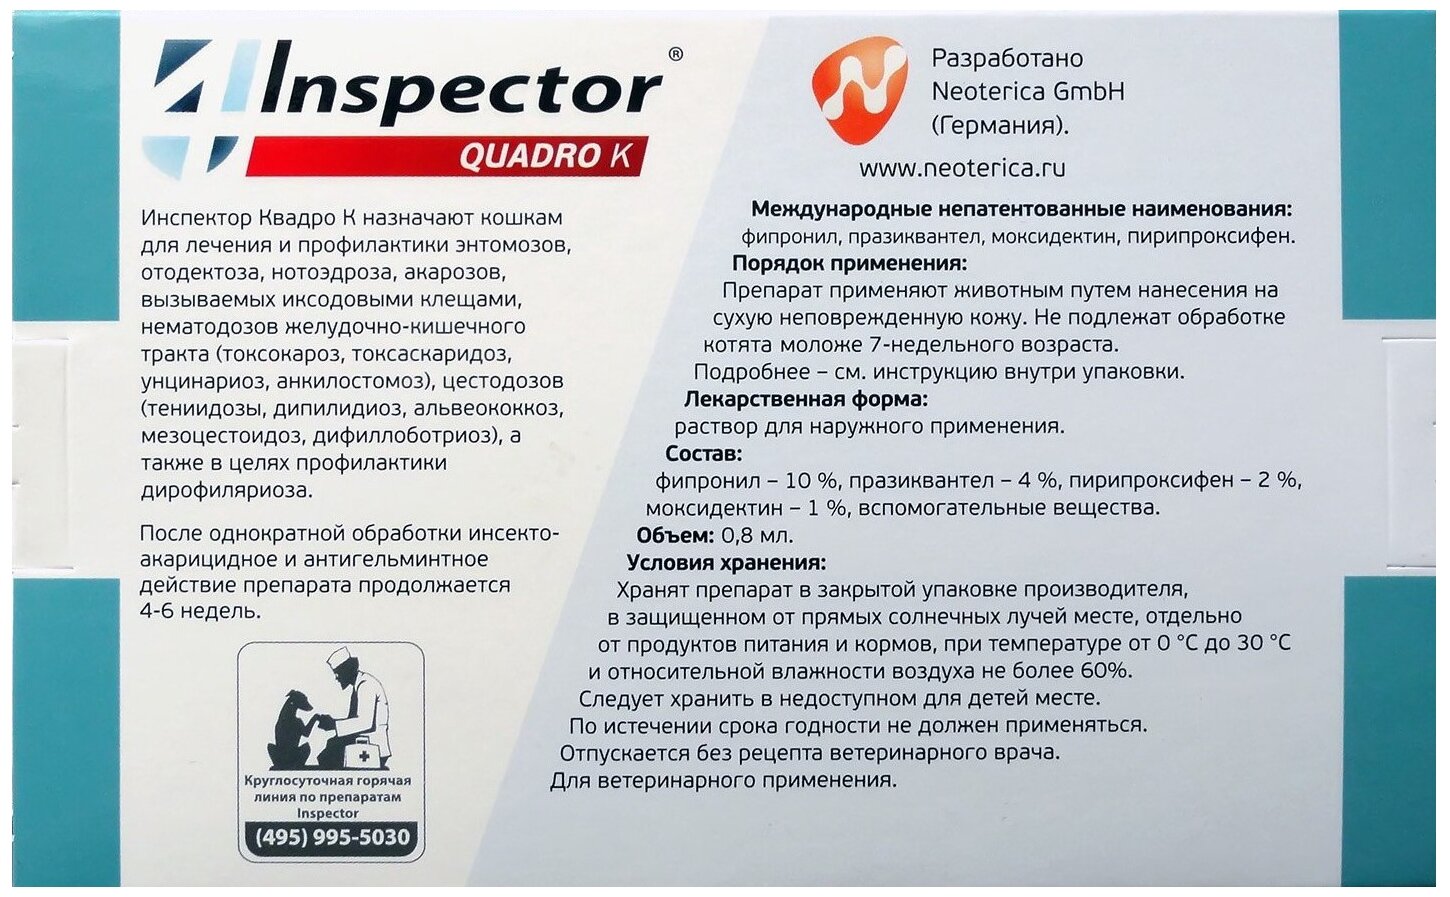 Inspector раствор от блох и клещей Quadro К от 4 до 8 кг для кошек 1 шт. в уп., 1 уп.